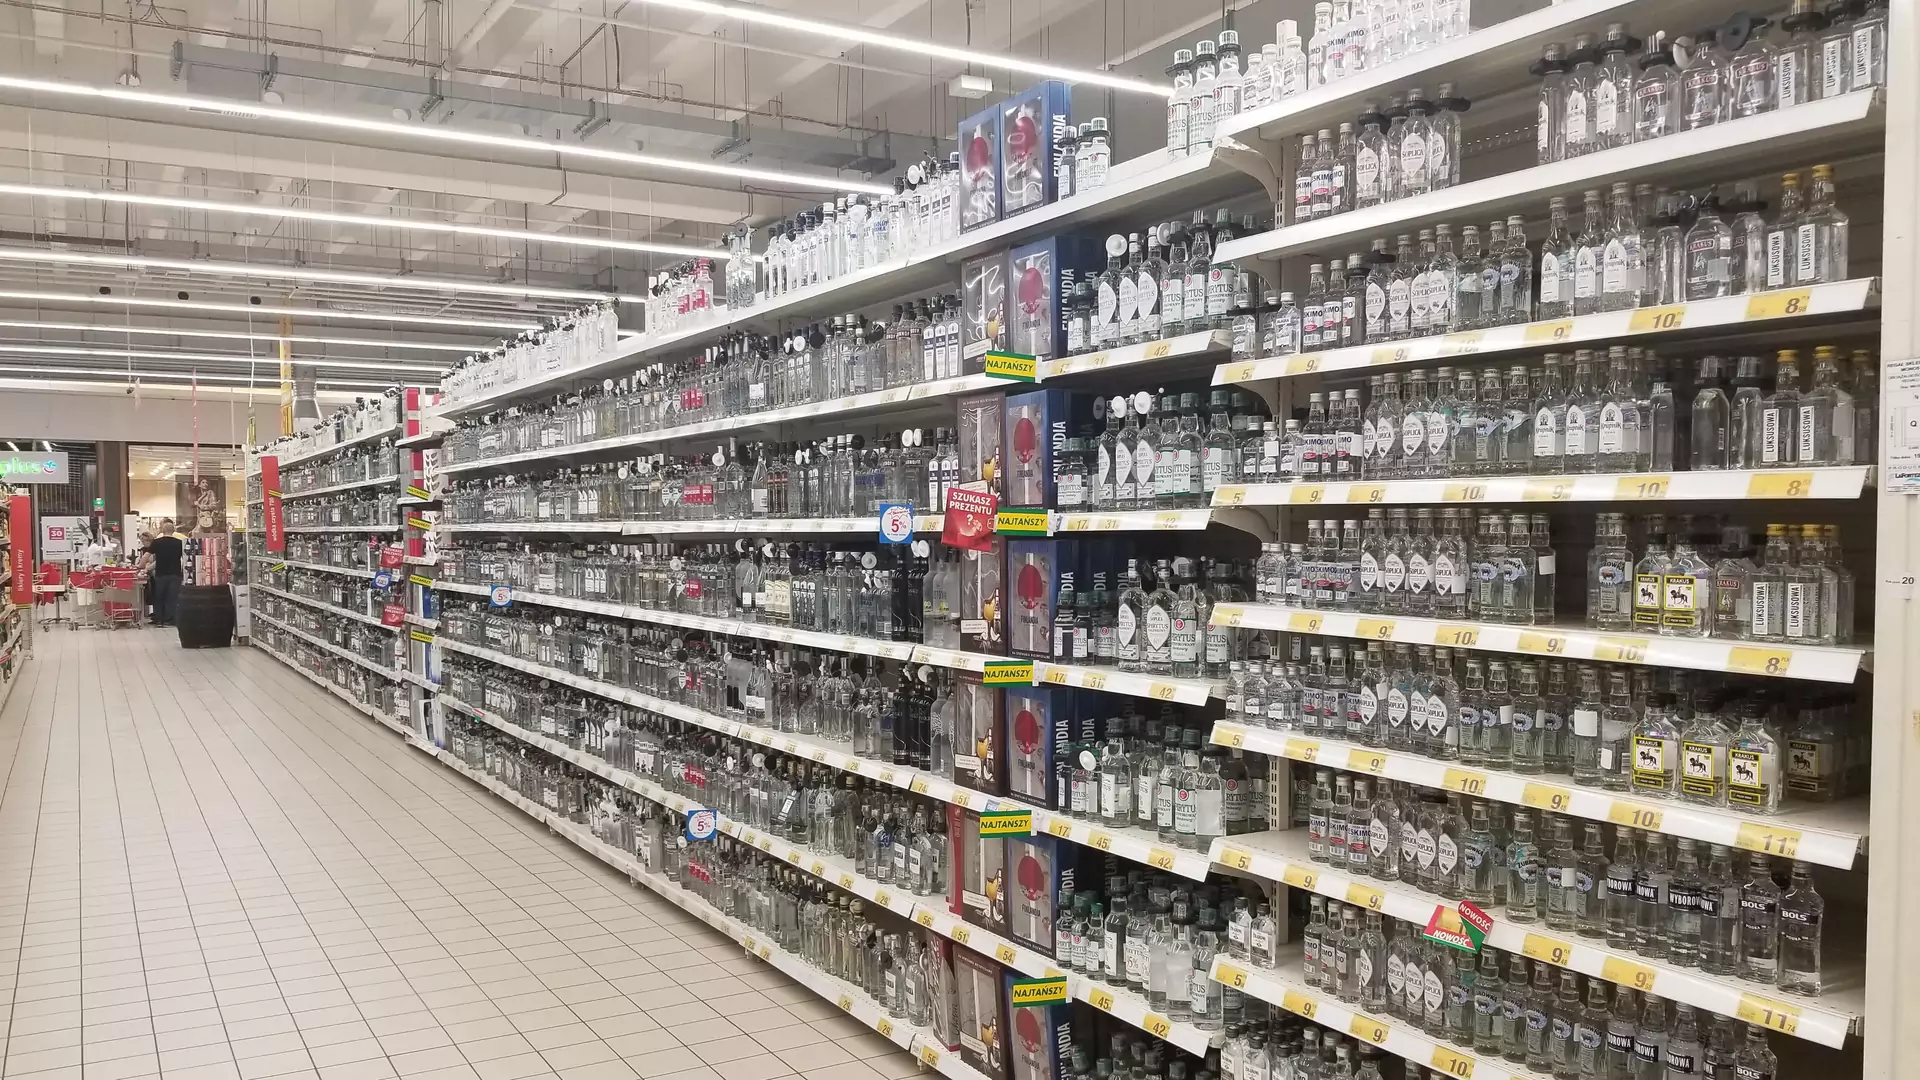 Reddit zaskoczony widokiem stoiska z wódką w Polsce. "Myślałem, że to Rosja"